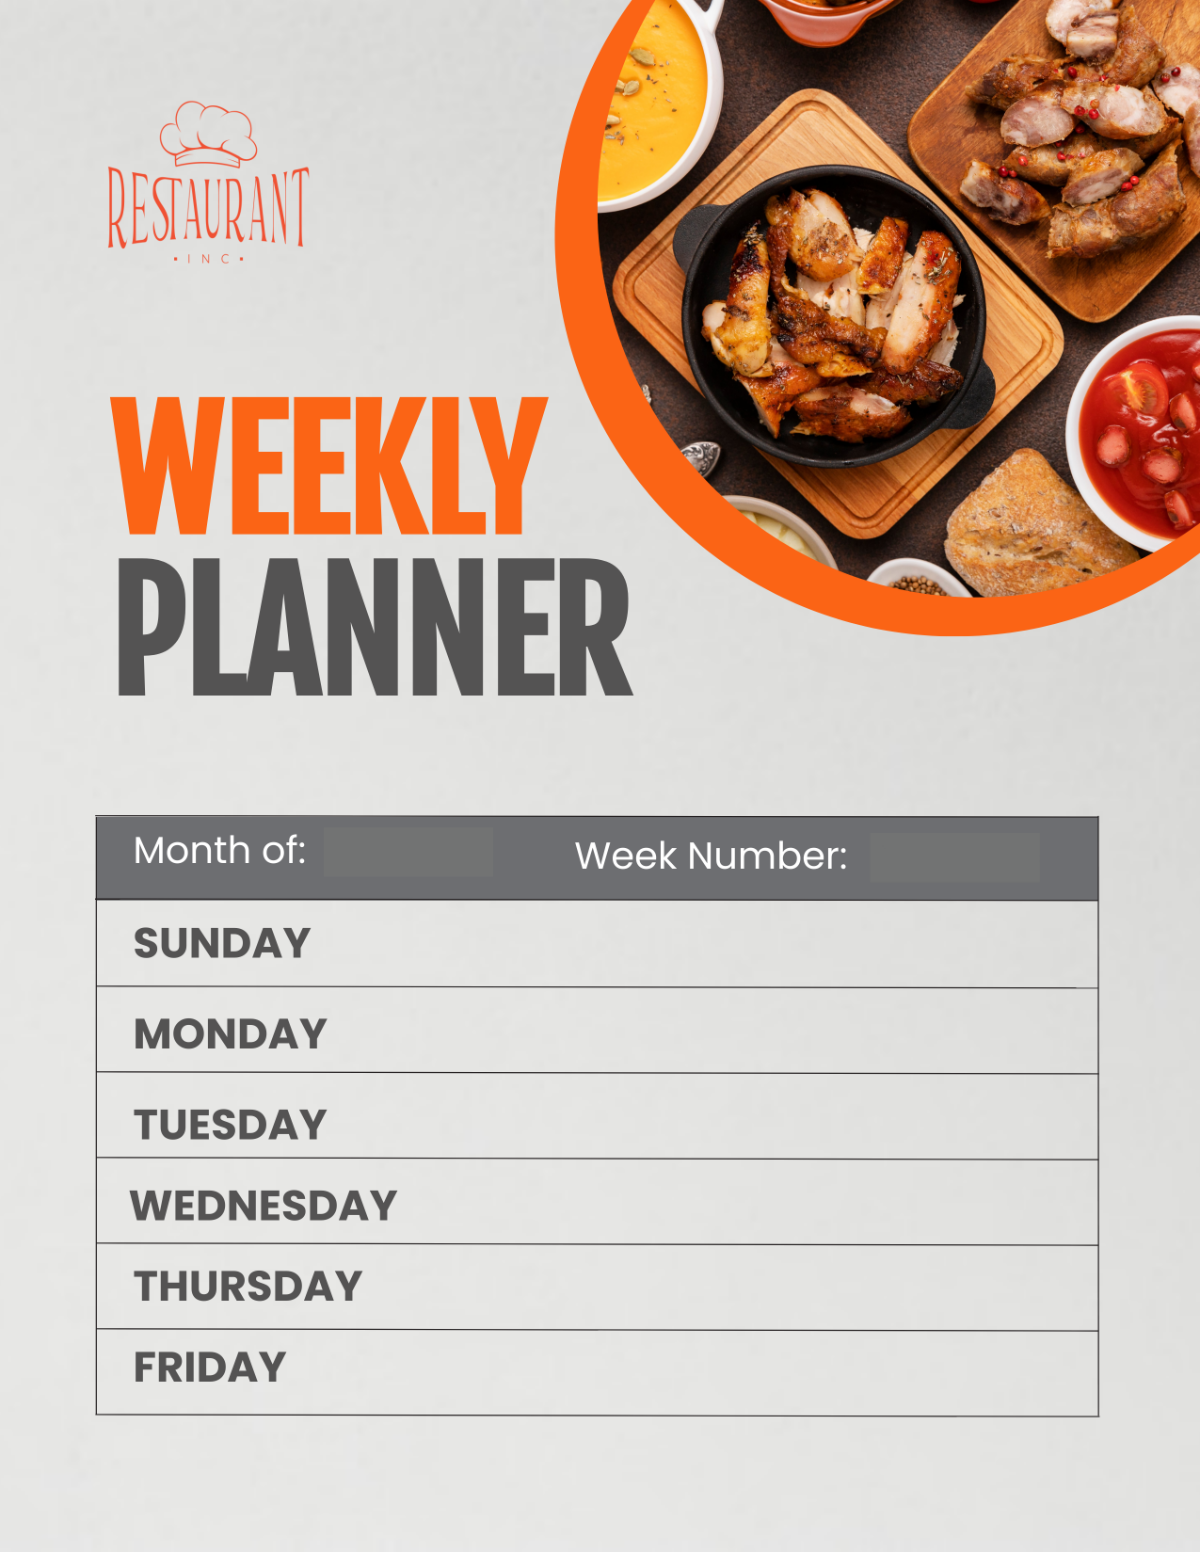 Restaurant Weekly Planner